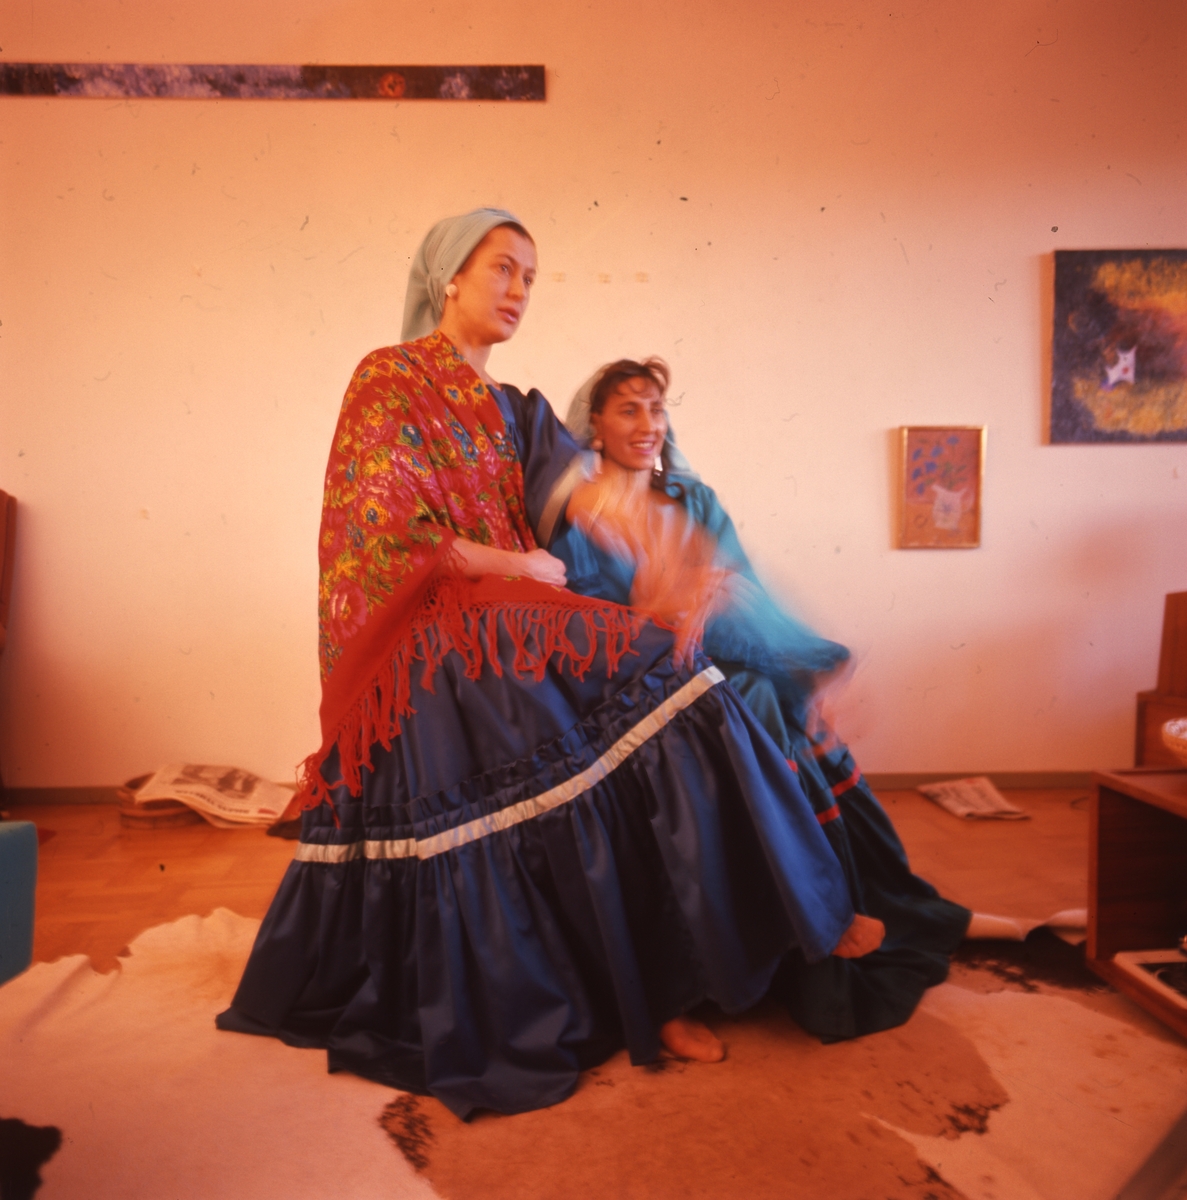 Systrarna Rosa och Katarina Taikon avfotograferade iklädda traditionella kläder.